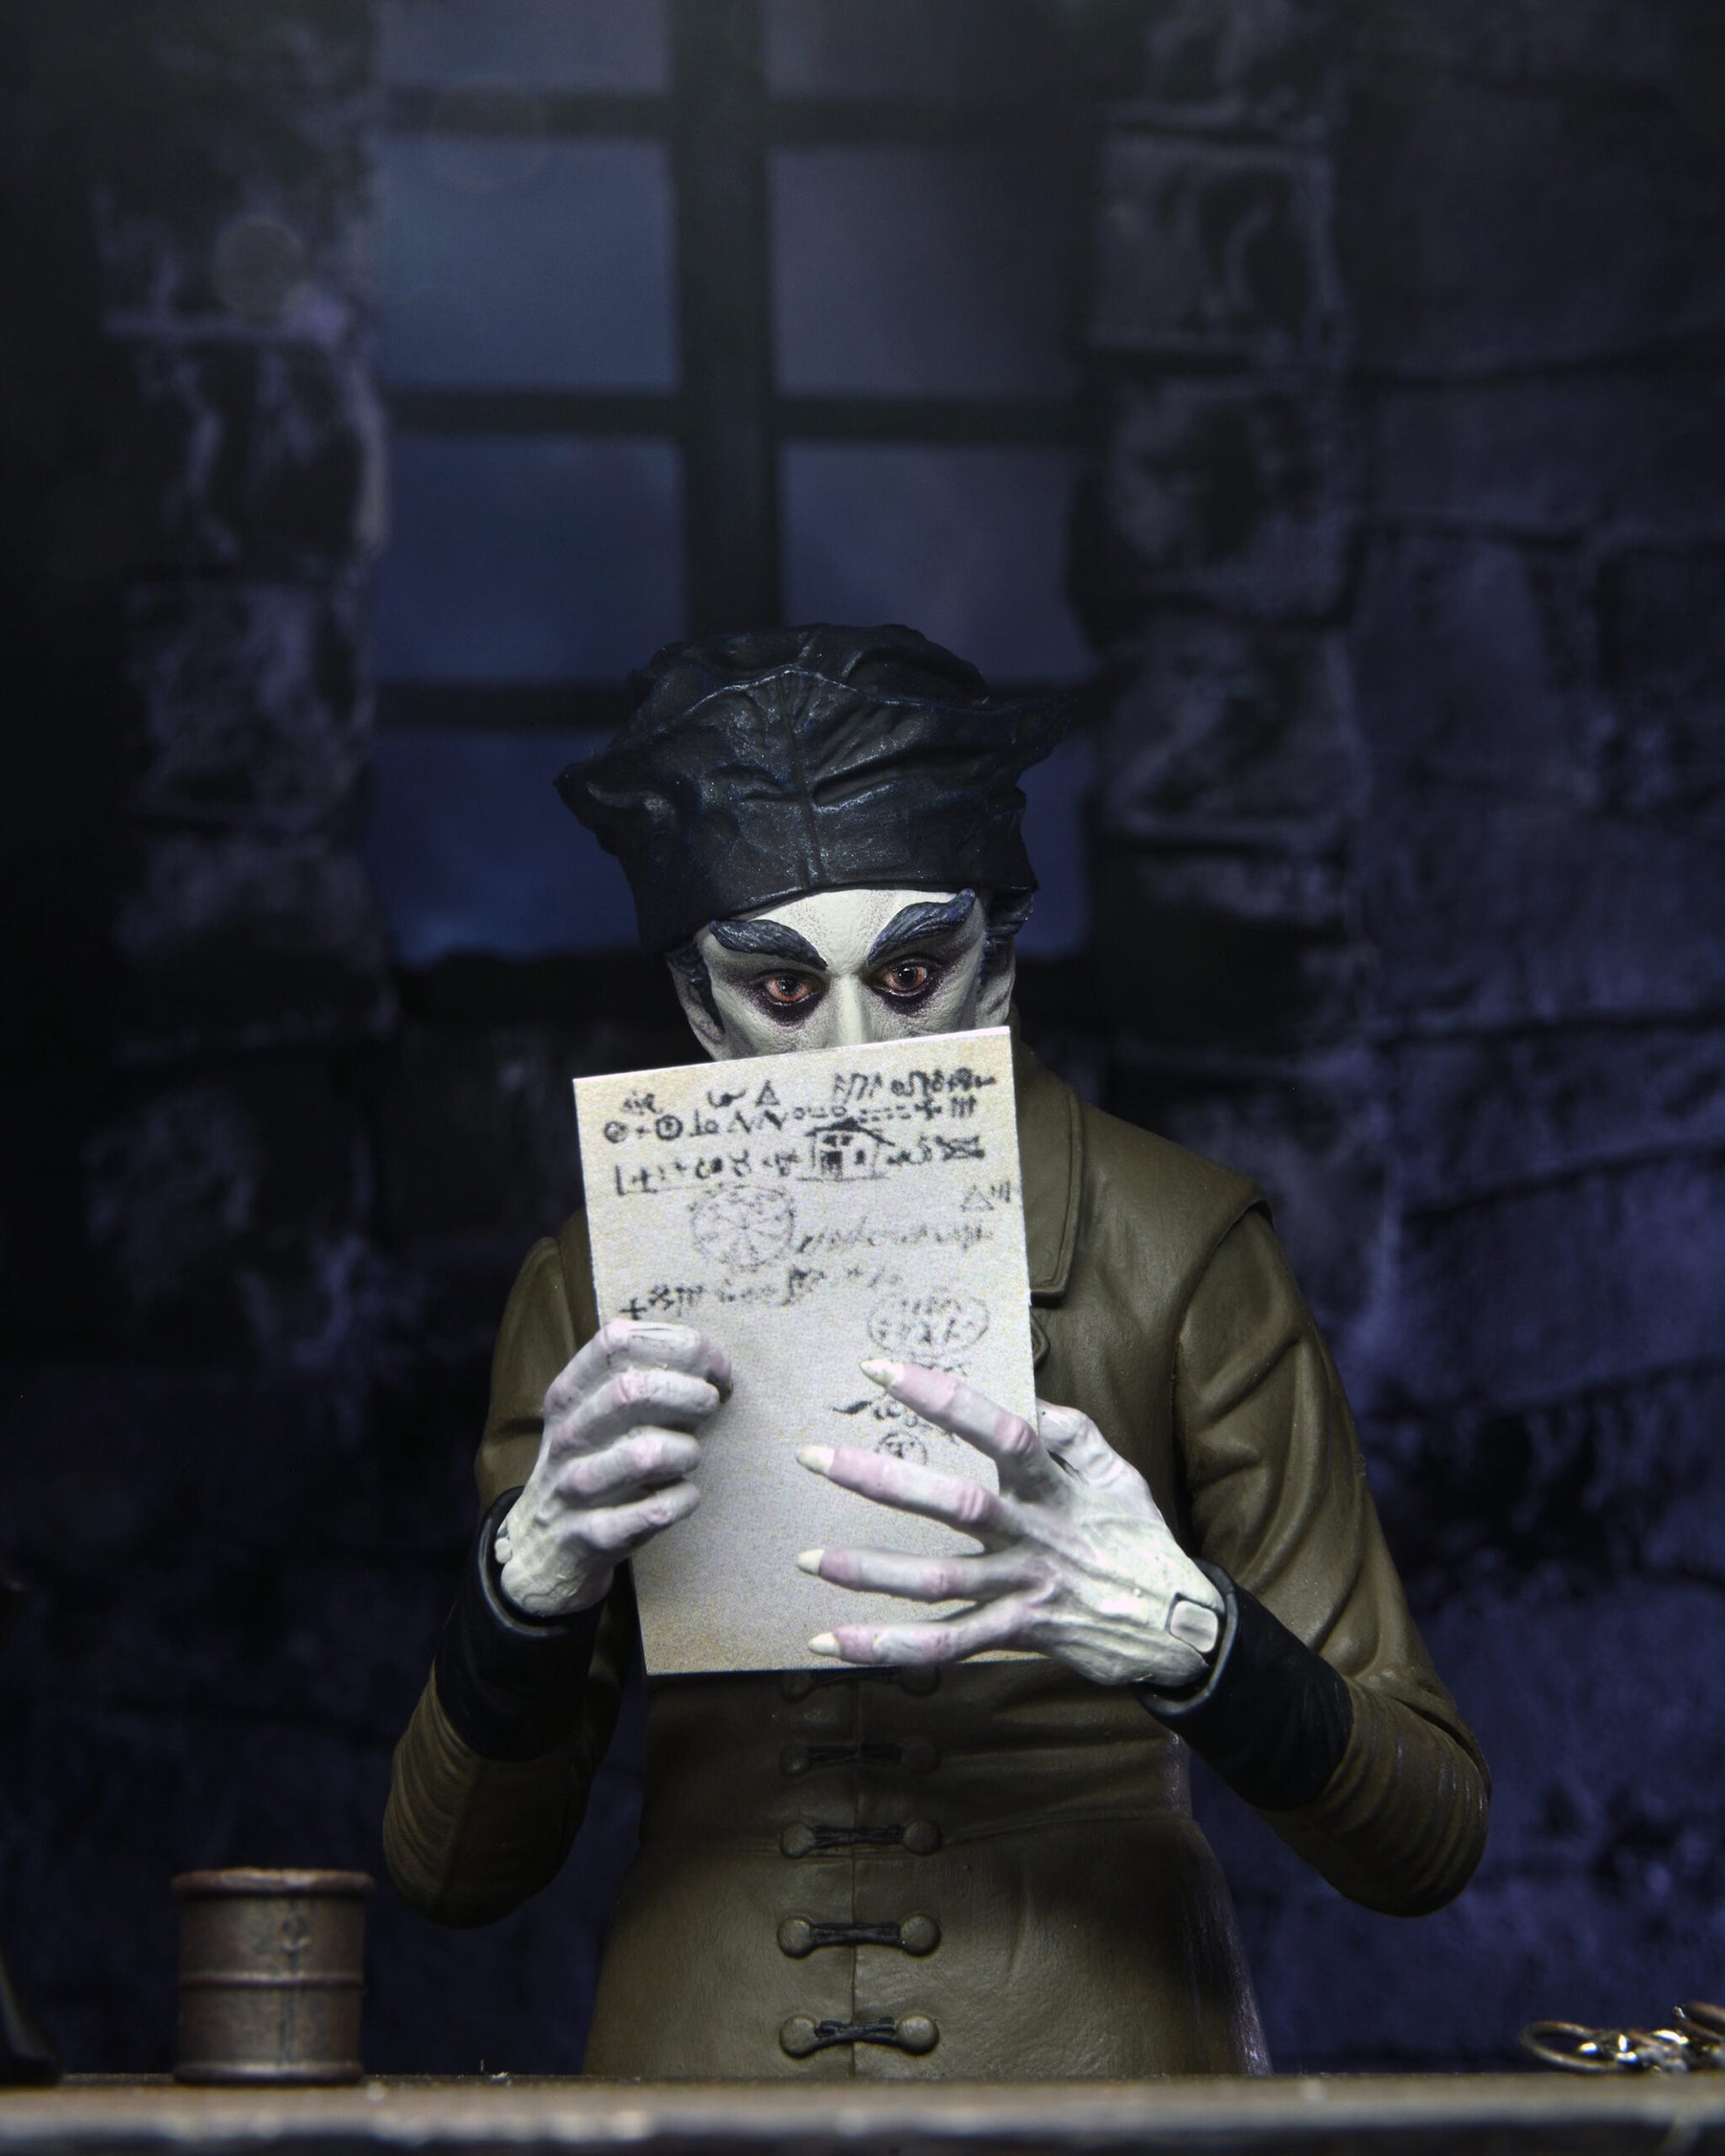 NECA - Nosferatu - Ultimate Count Orlok (Color) 7" Action Figure